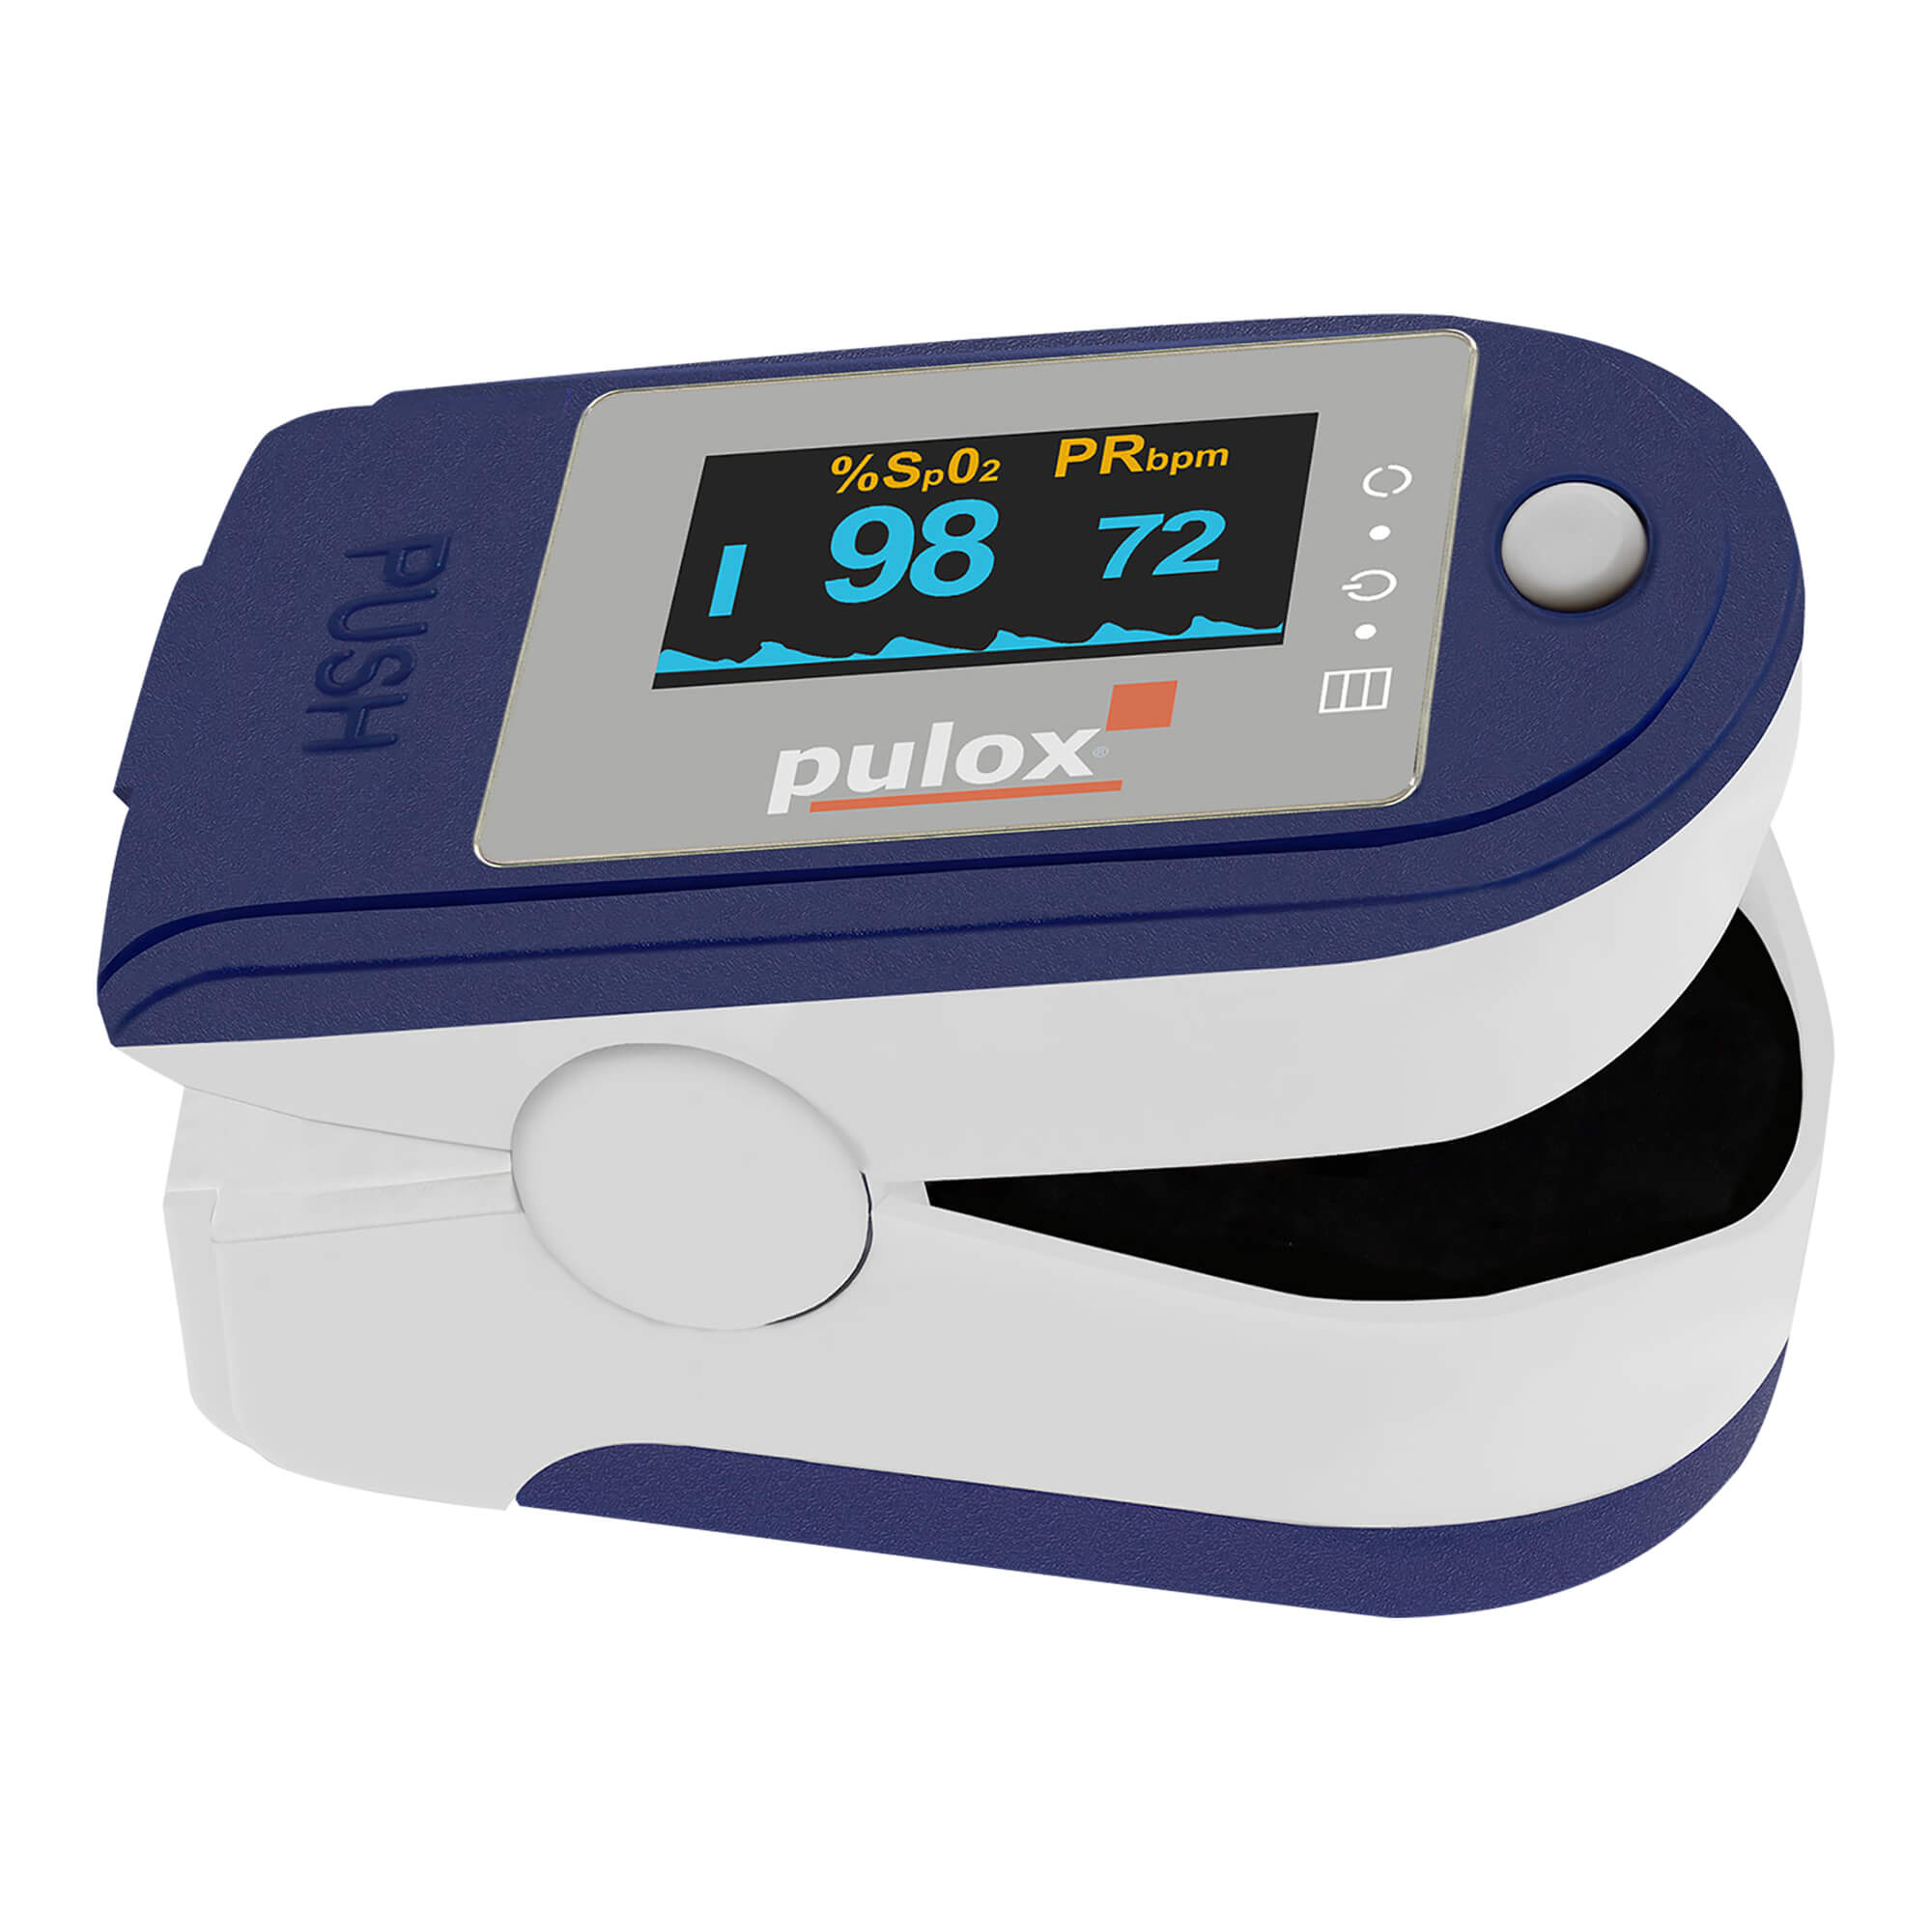 Finger-Pulsoximeter. Mit OLED-Display, Alarm, Pulston, Software und Zubehör. Farbe: blau.